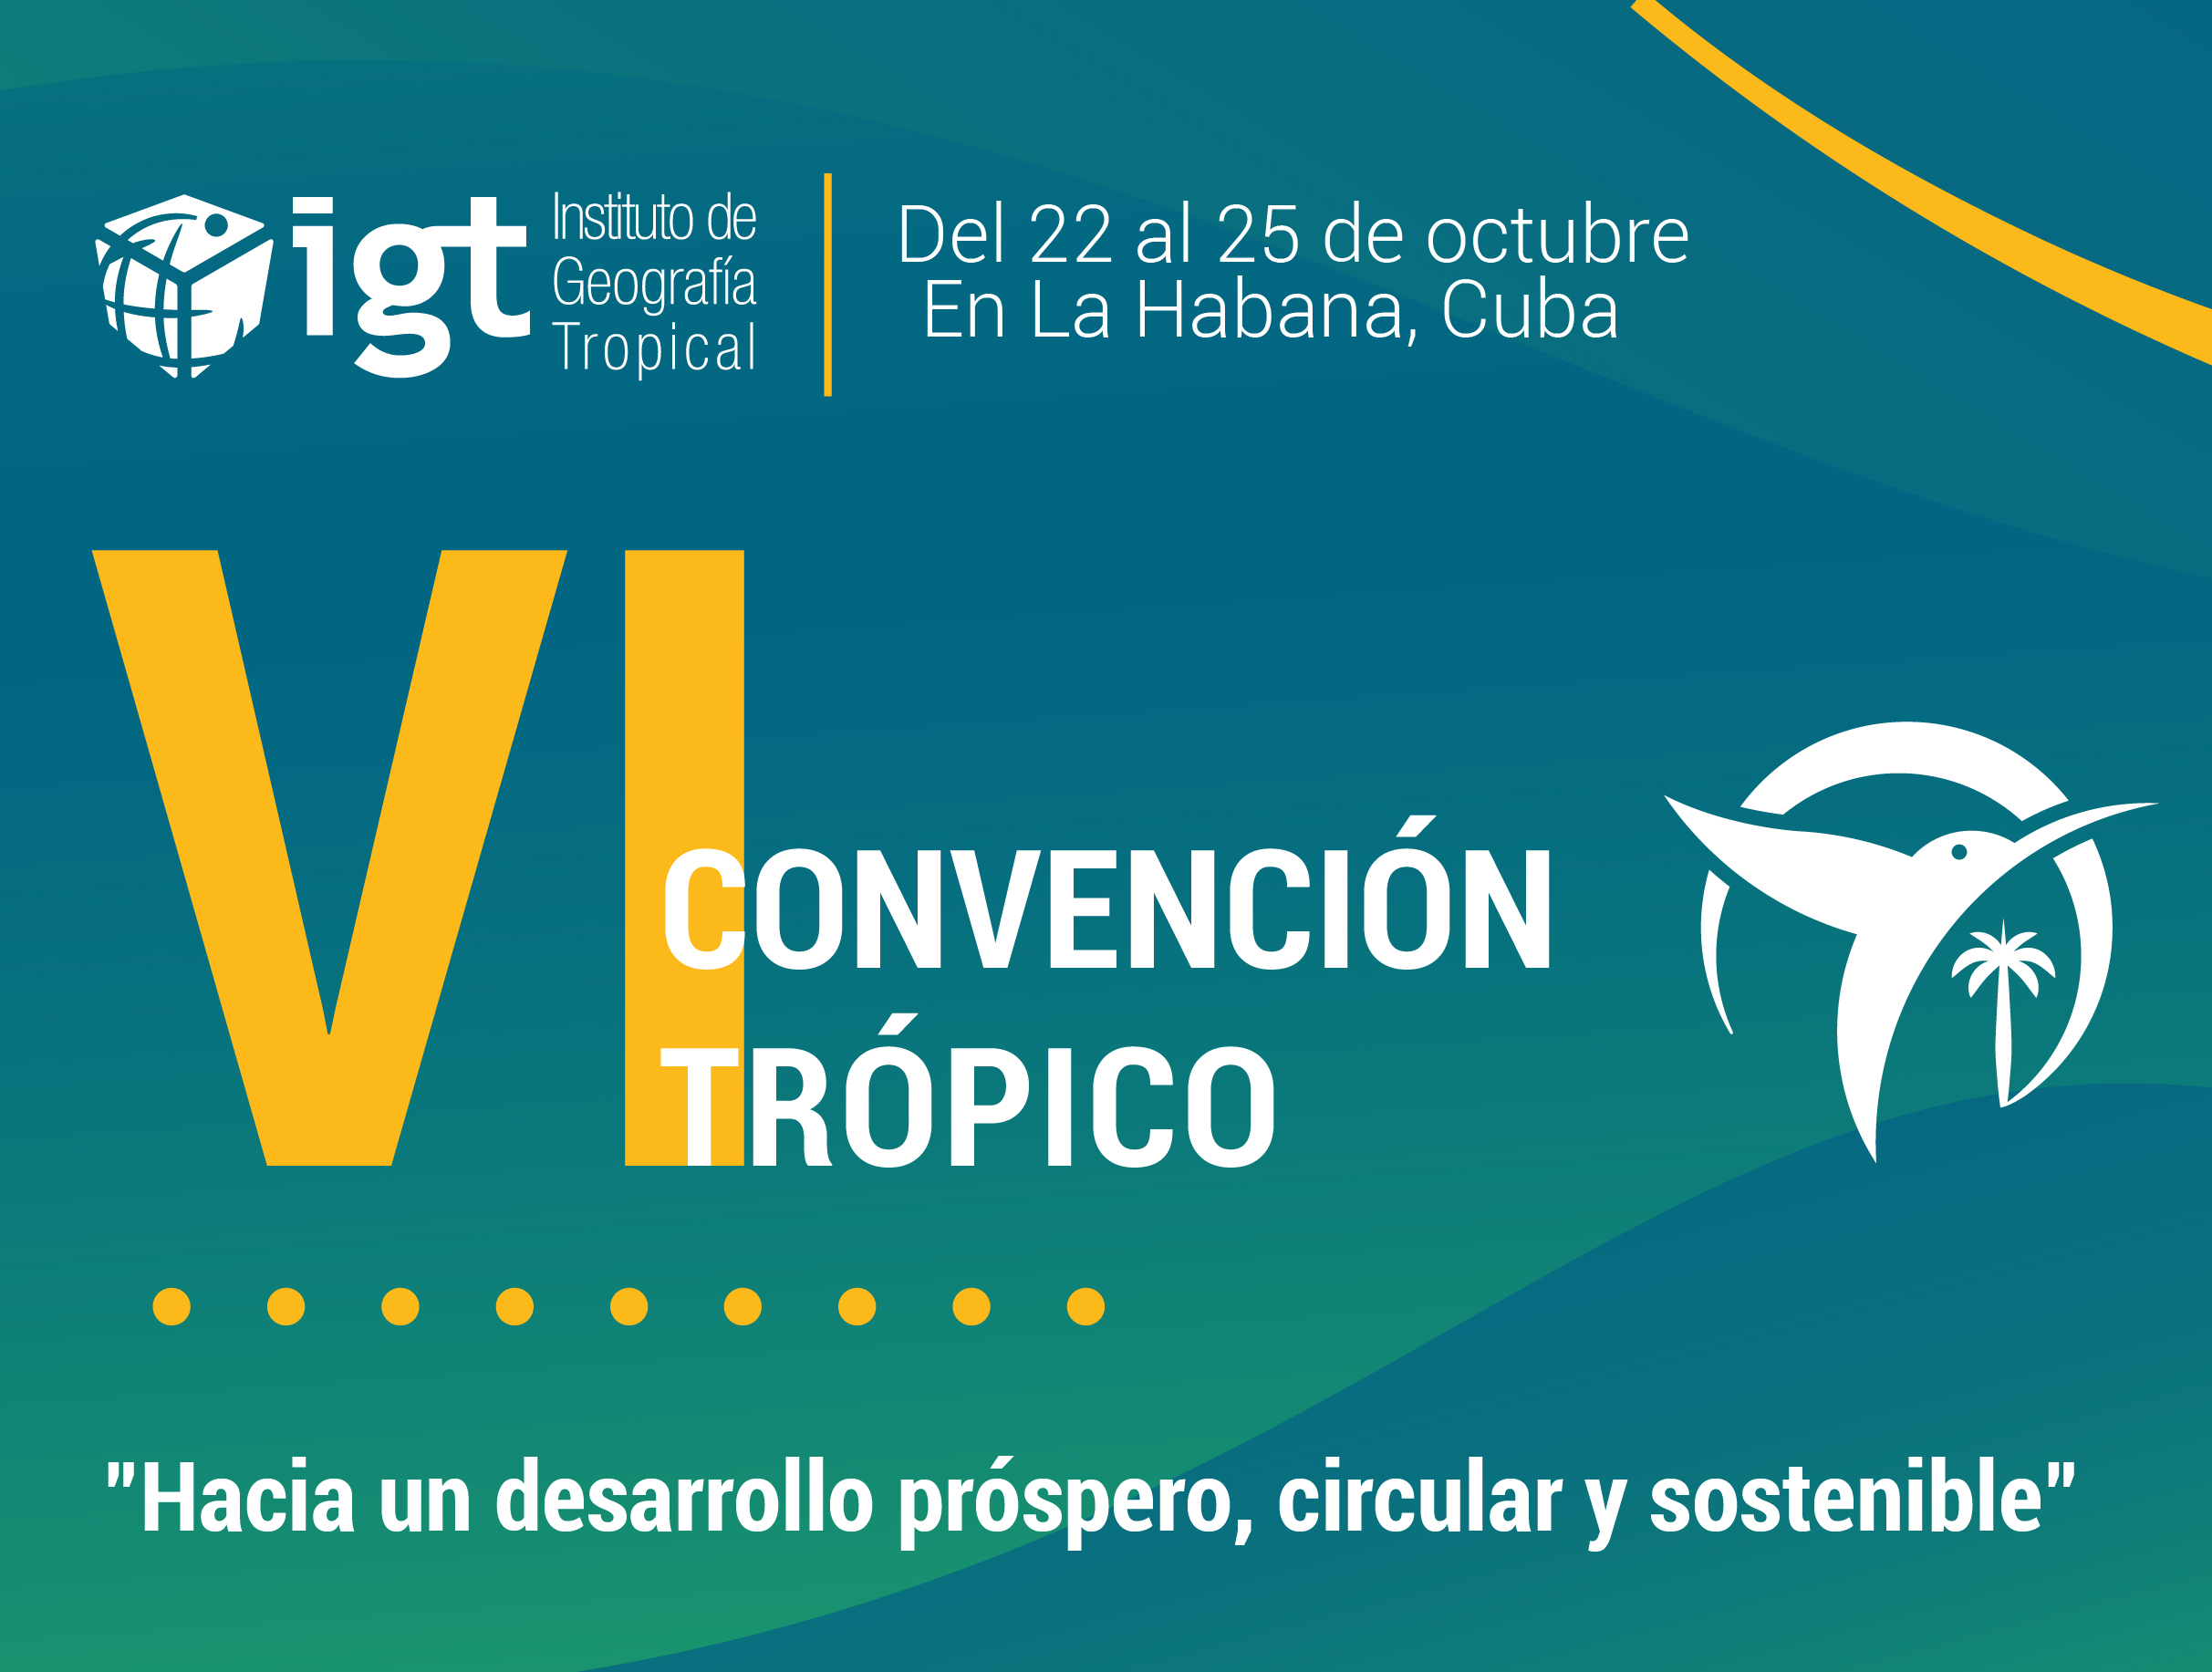 Events in Cuba - Convención TRÓPICO 2022